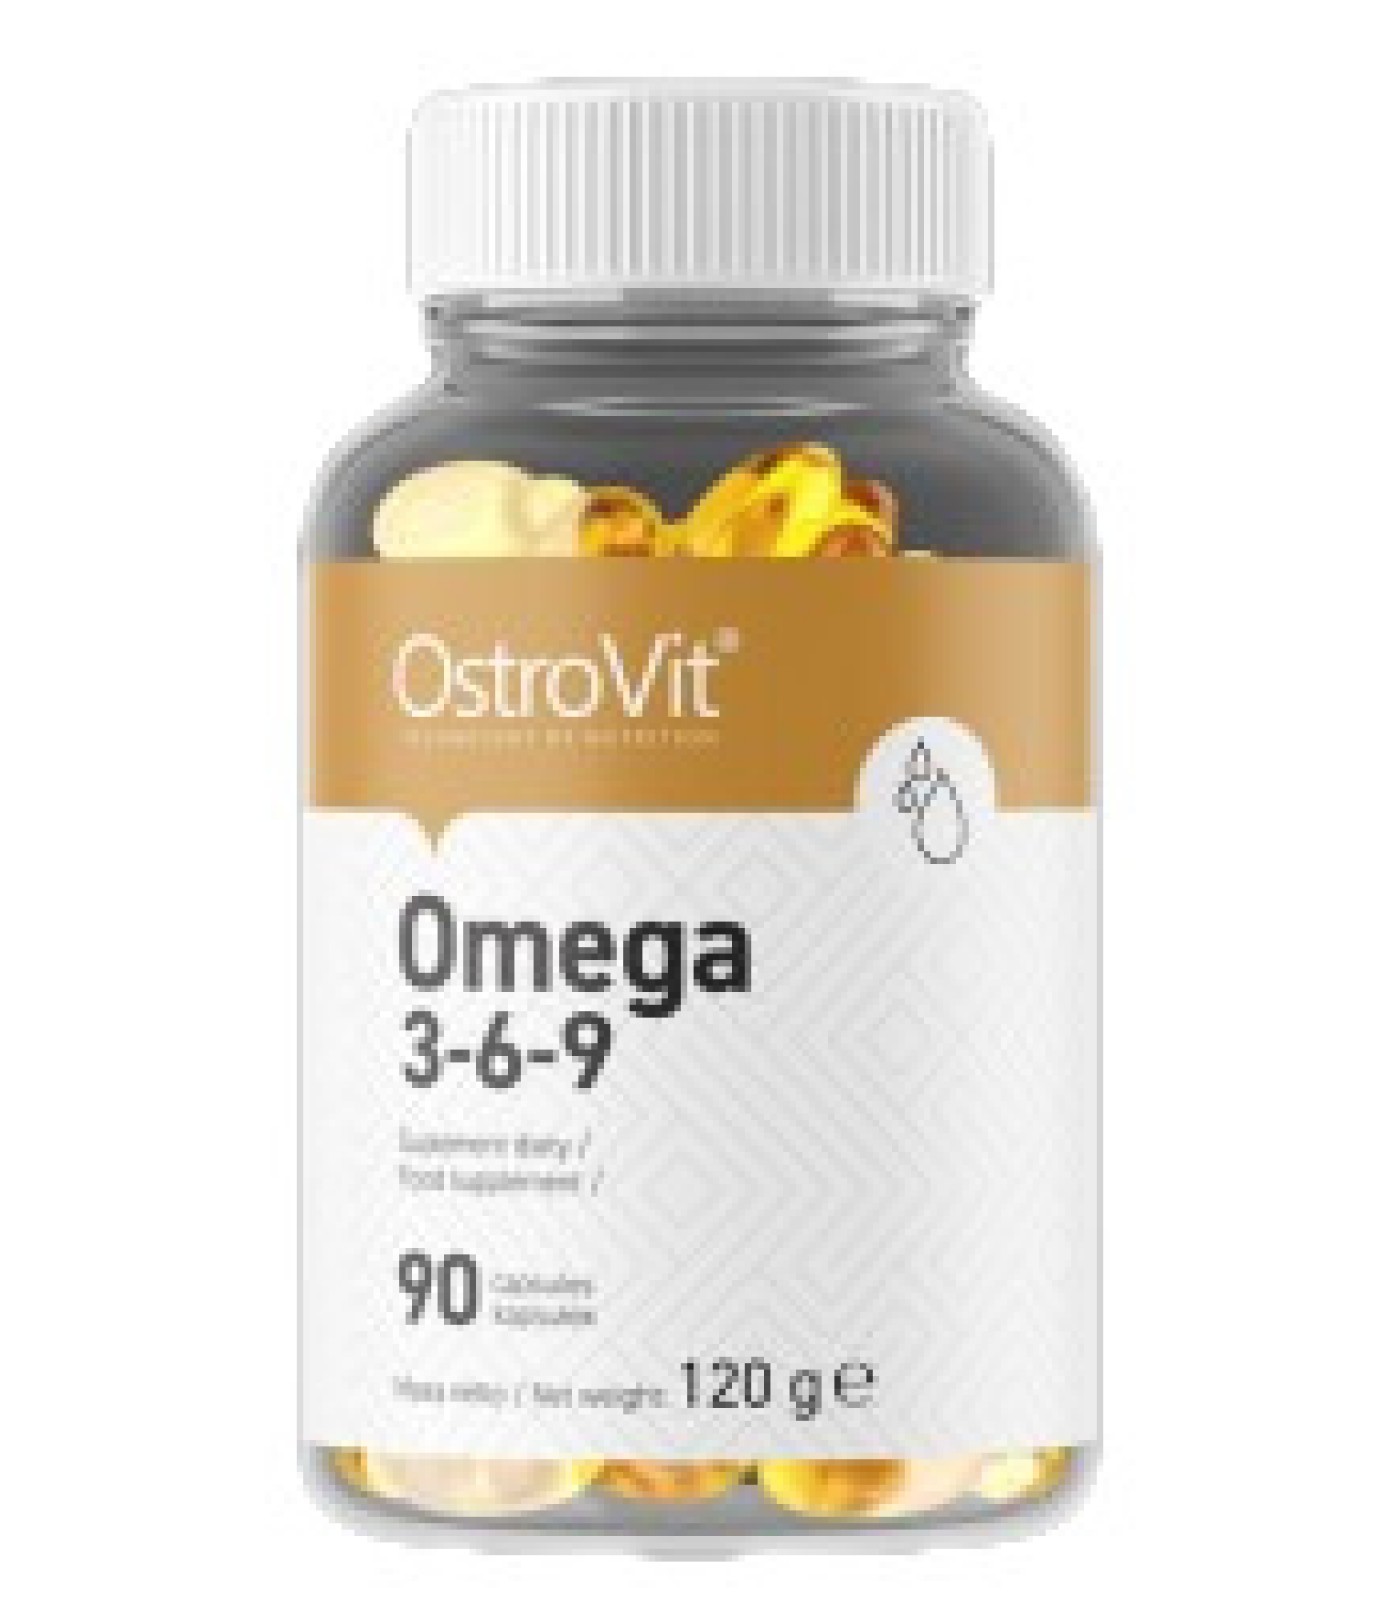 OstroVit - Omega 3-6-9 / 90softgels